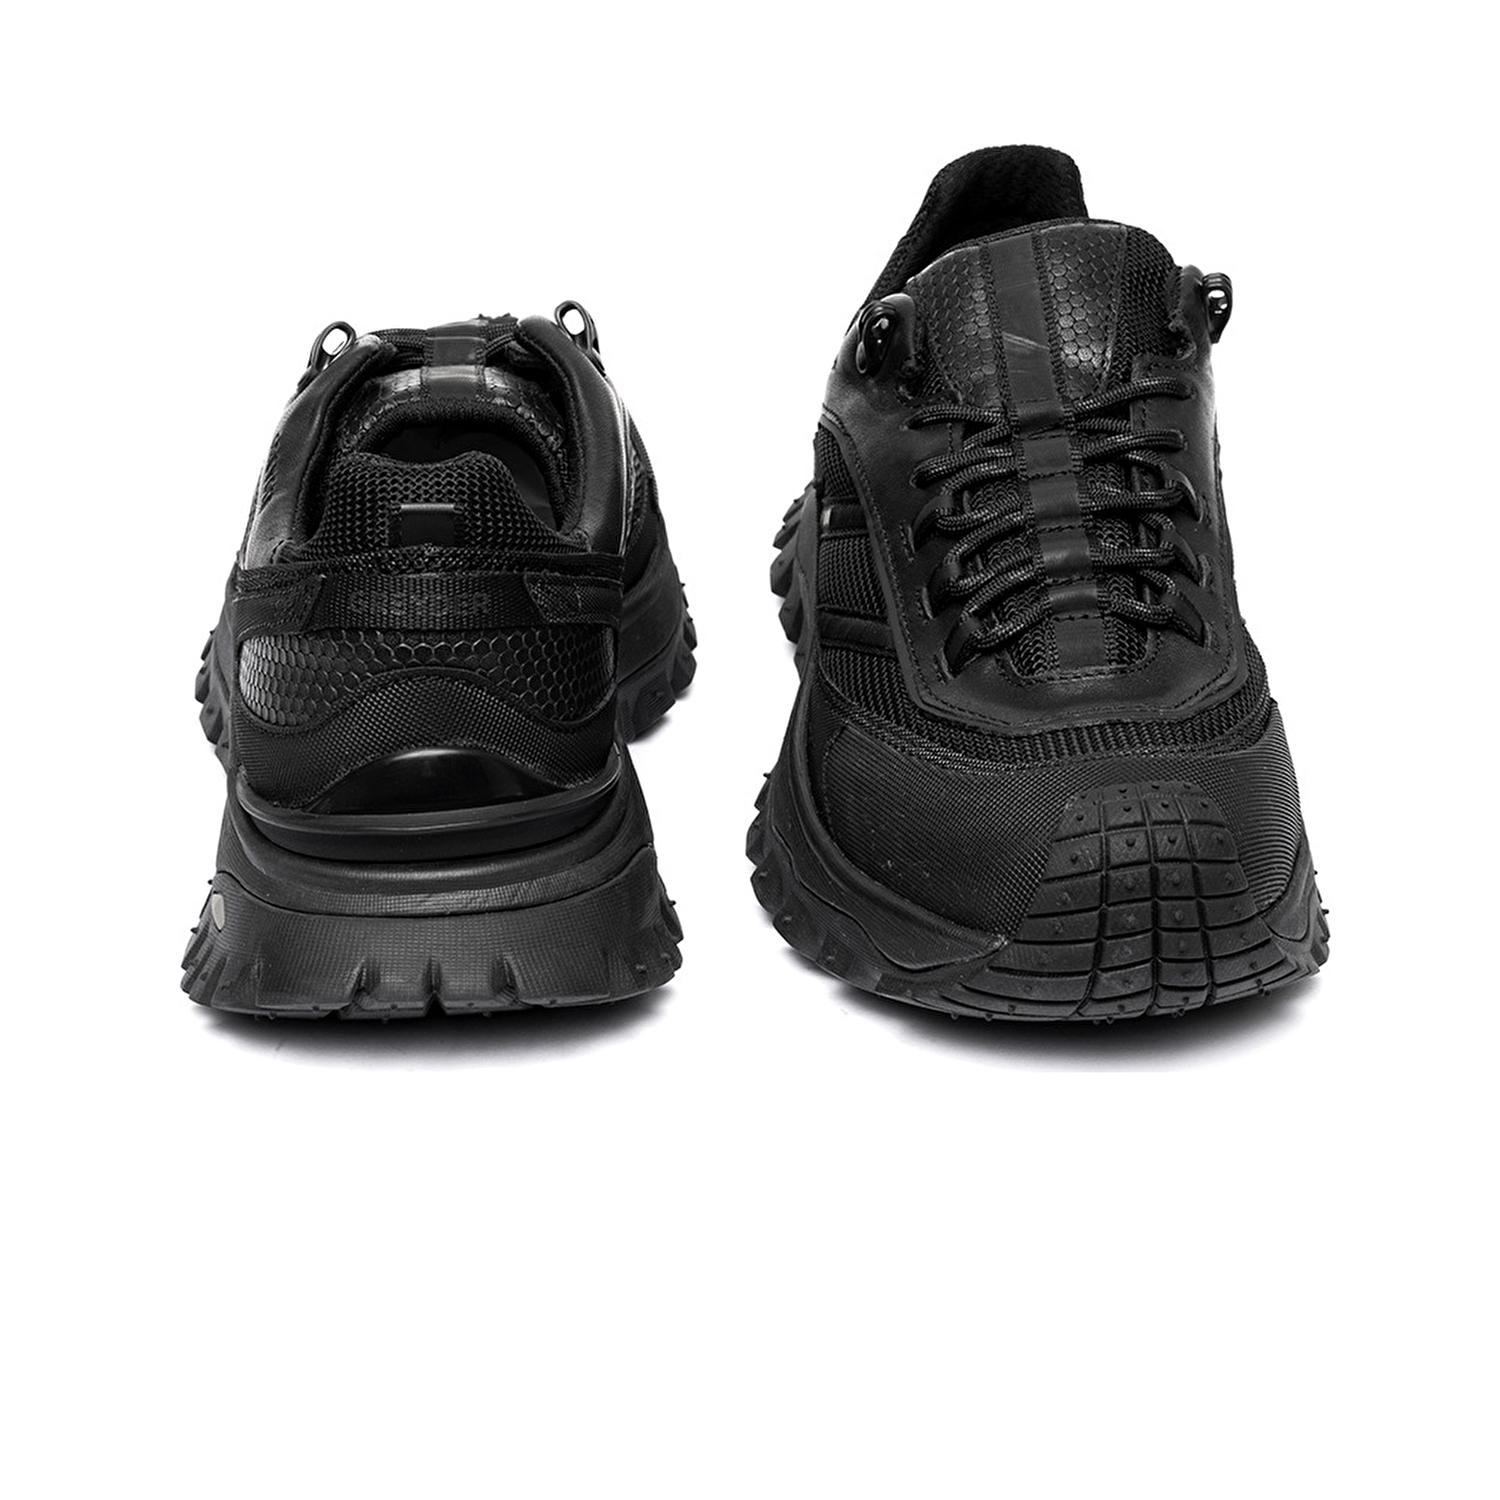 Erkek Siyah Su Geçirmez Outdoor Ayakkabı 3K1GA16353-6